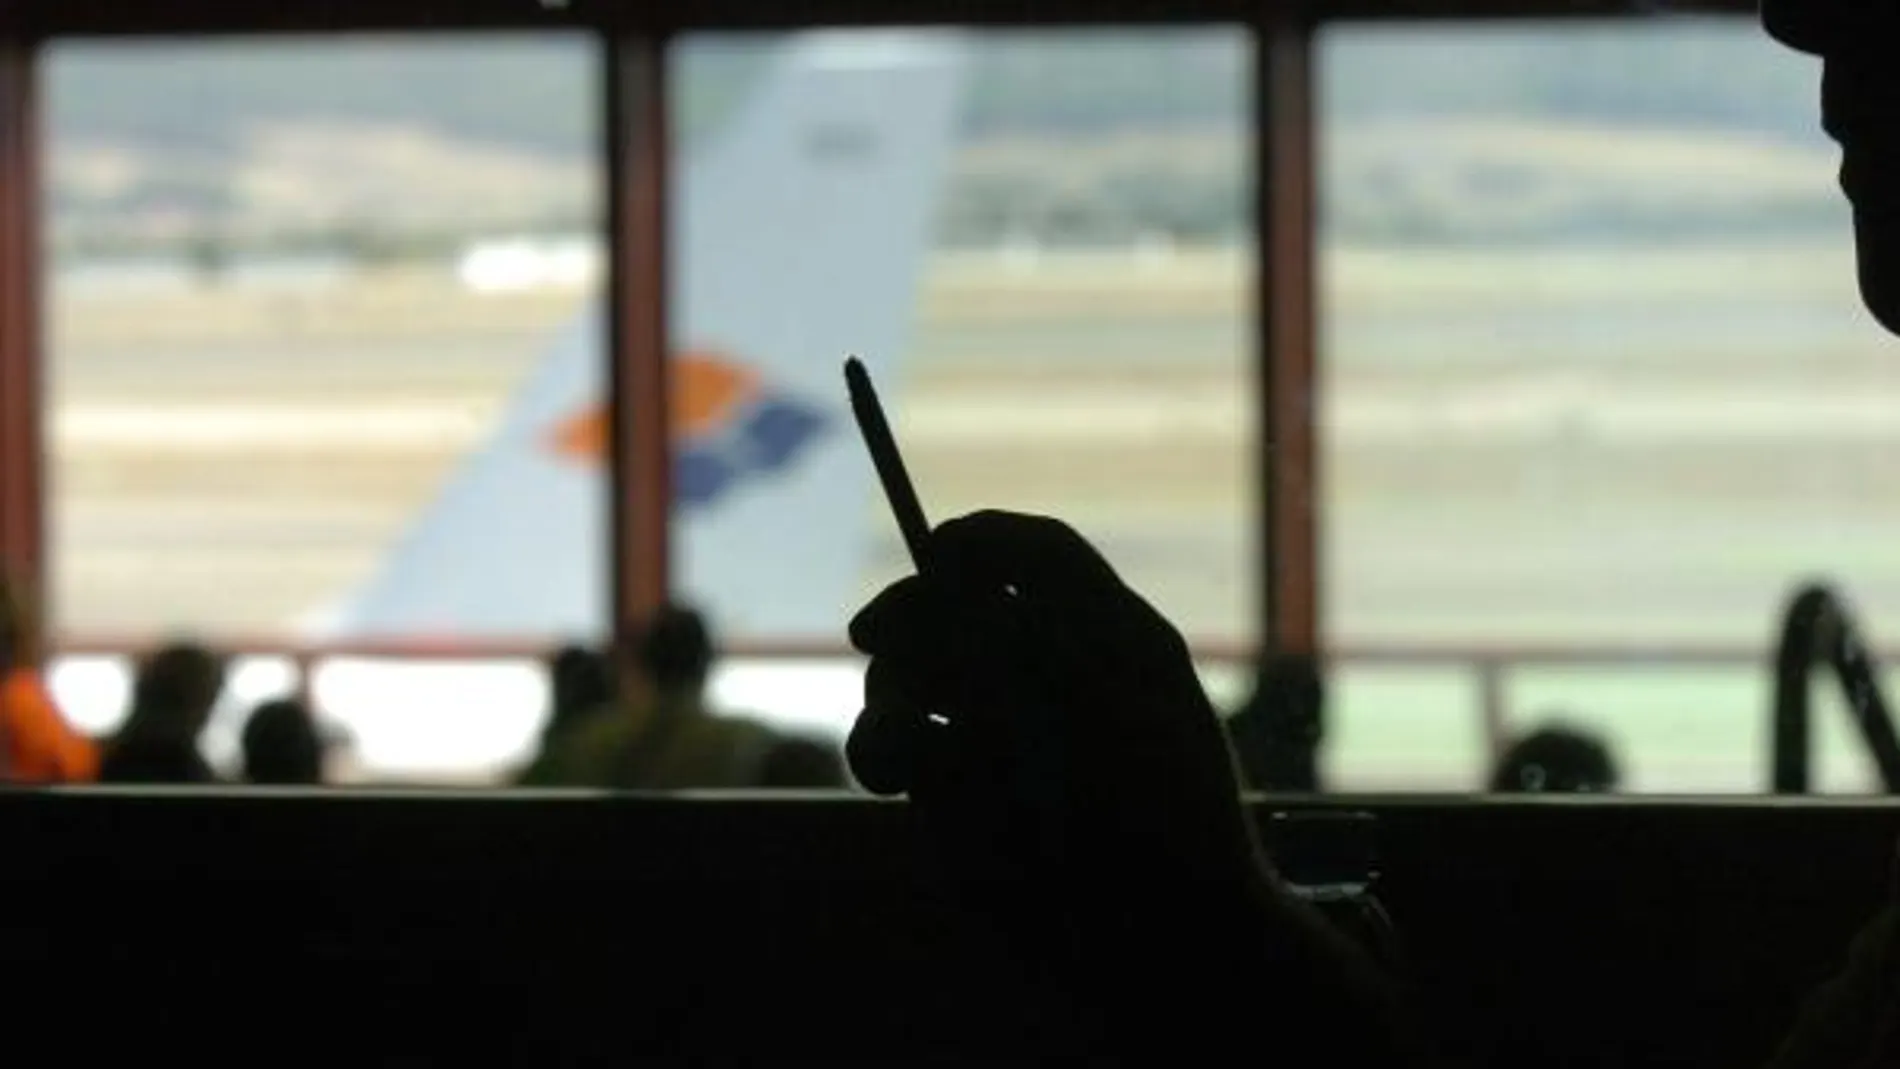 Los aeropuertos no tendrán puntos para fumadores